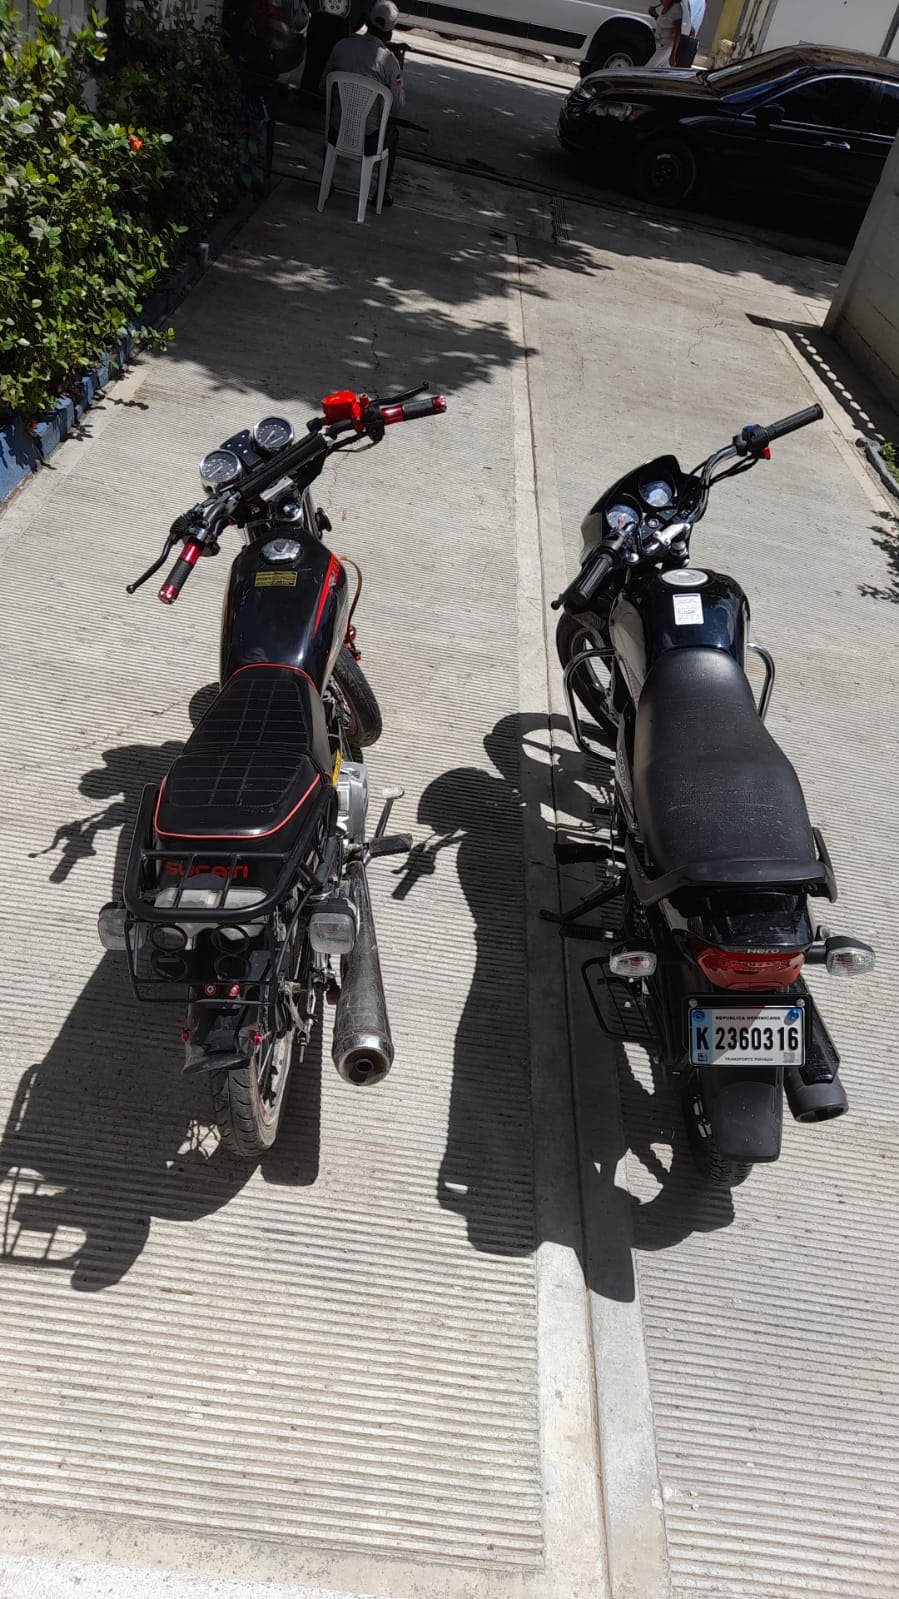 PN apresa haitiano pretendía comercializar dos motocicletas robadas